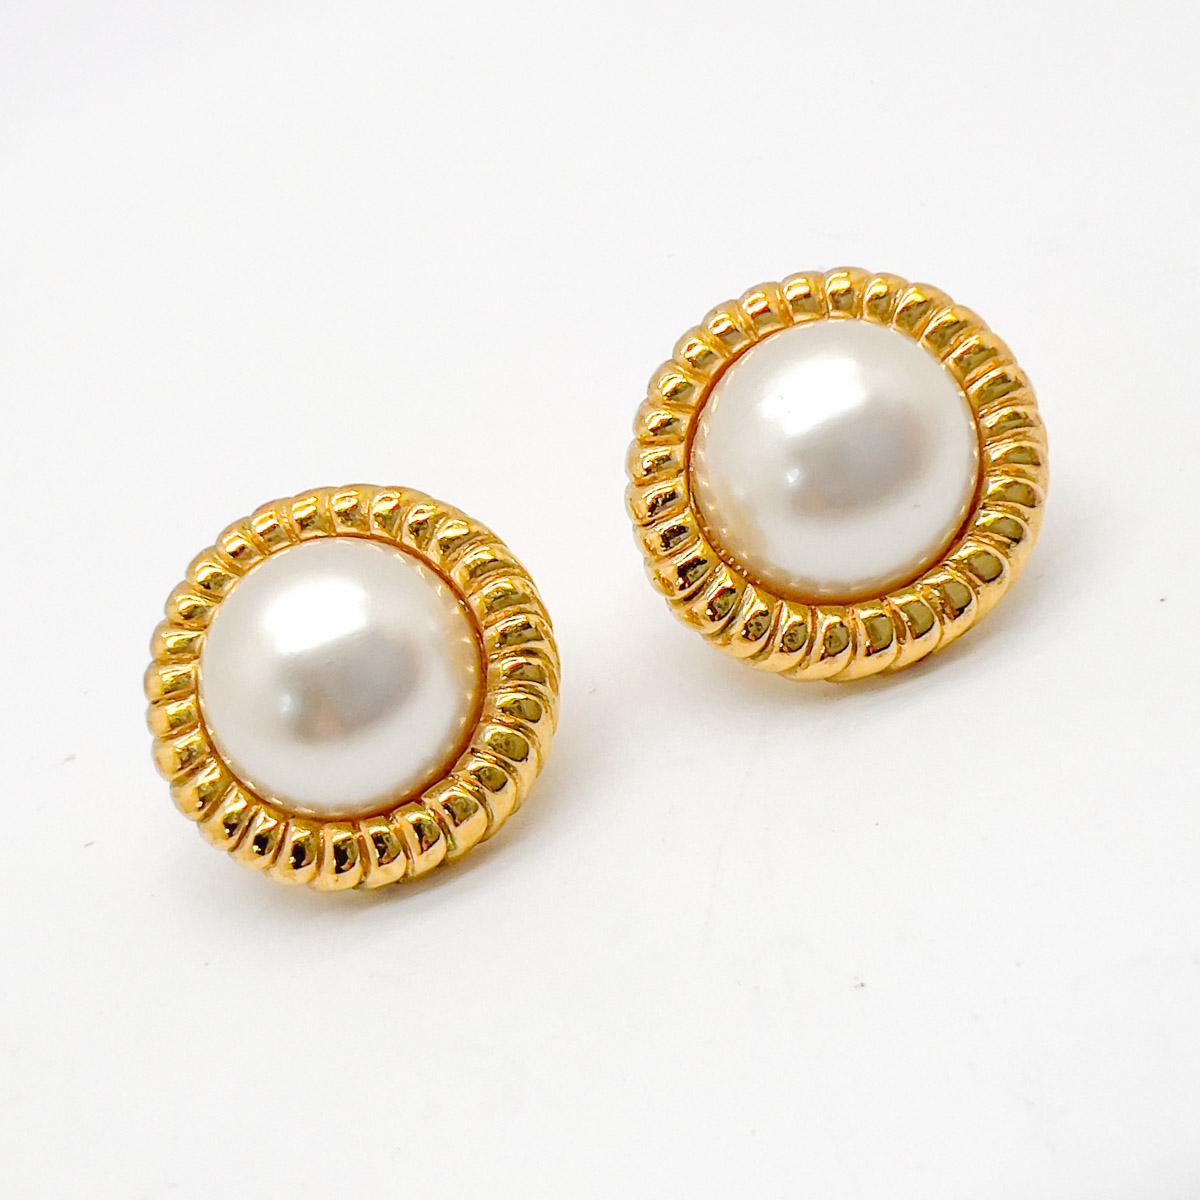 Ein Paar Vintage Pearl Ribbed Gallery Ohrringe. Fabelhafte Qualität und glänzende Perlen. Das ultimative schicke Accessoire.
Eine unsignierte Schönheit. Ein seltener Schatz. Nur weil ein Schmuckstück nicht den Namen eines Designers trägt, heißt das